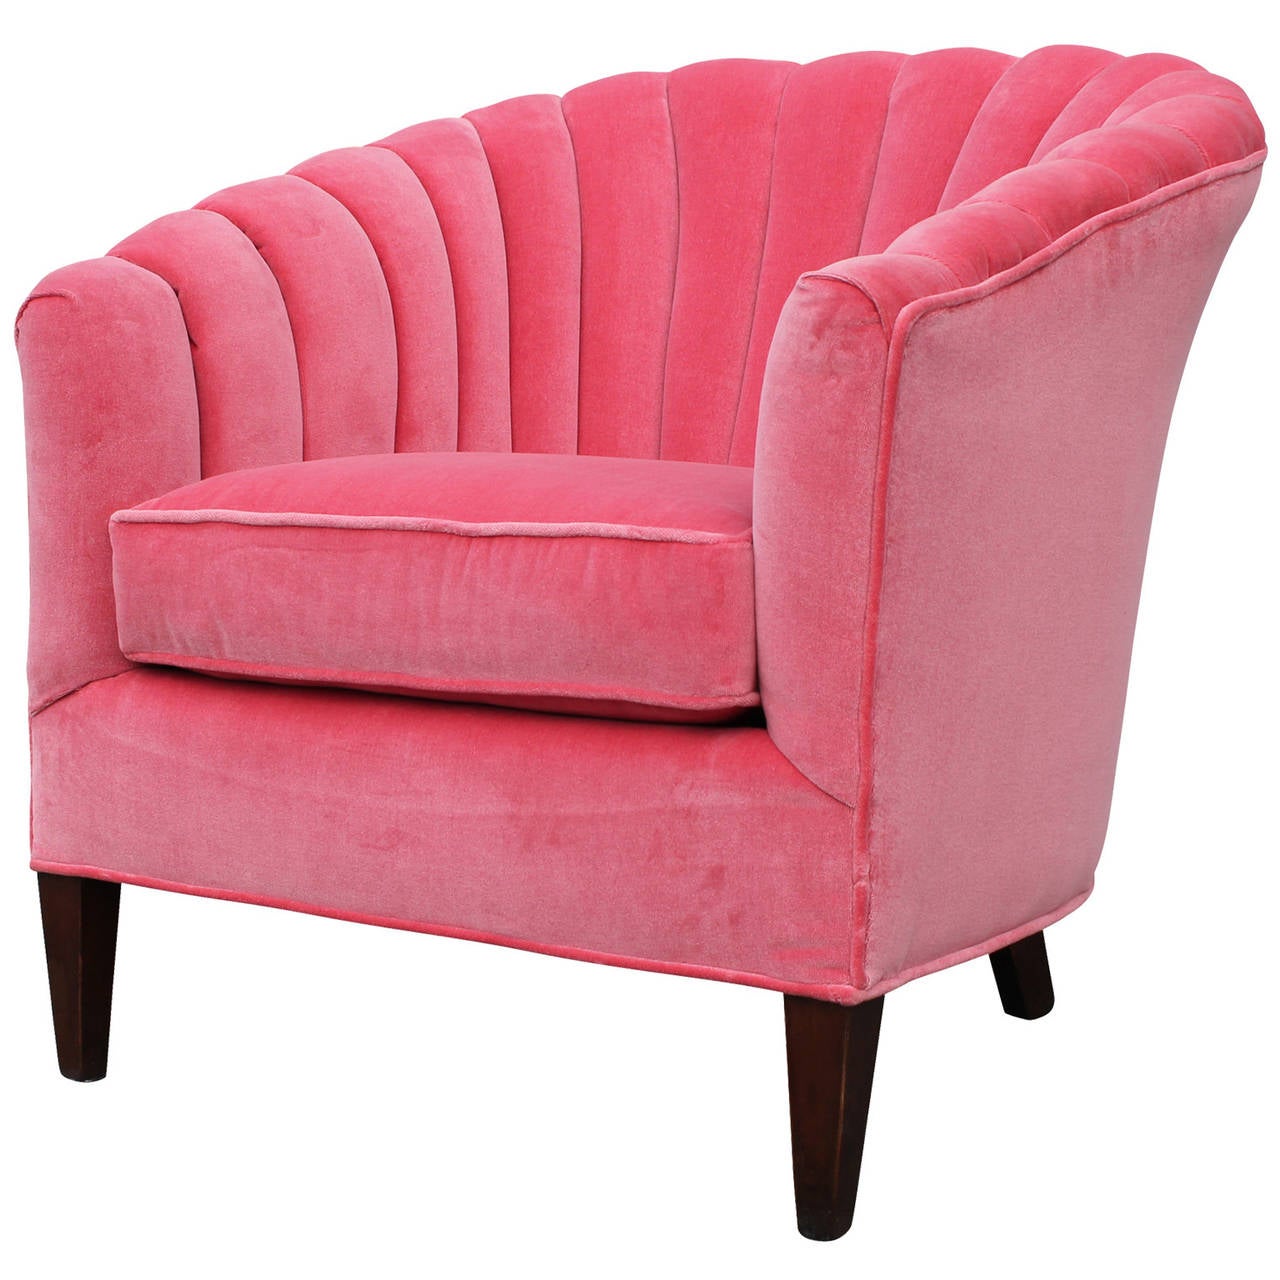 dark pink chair